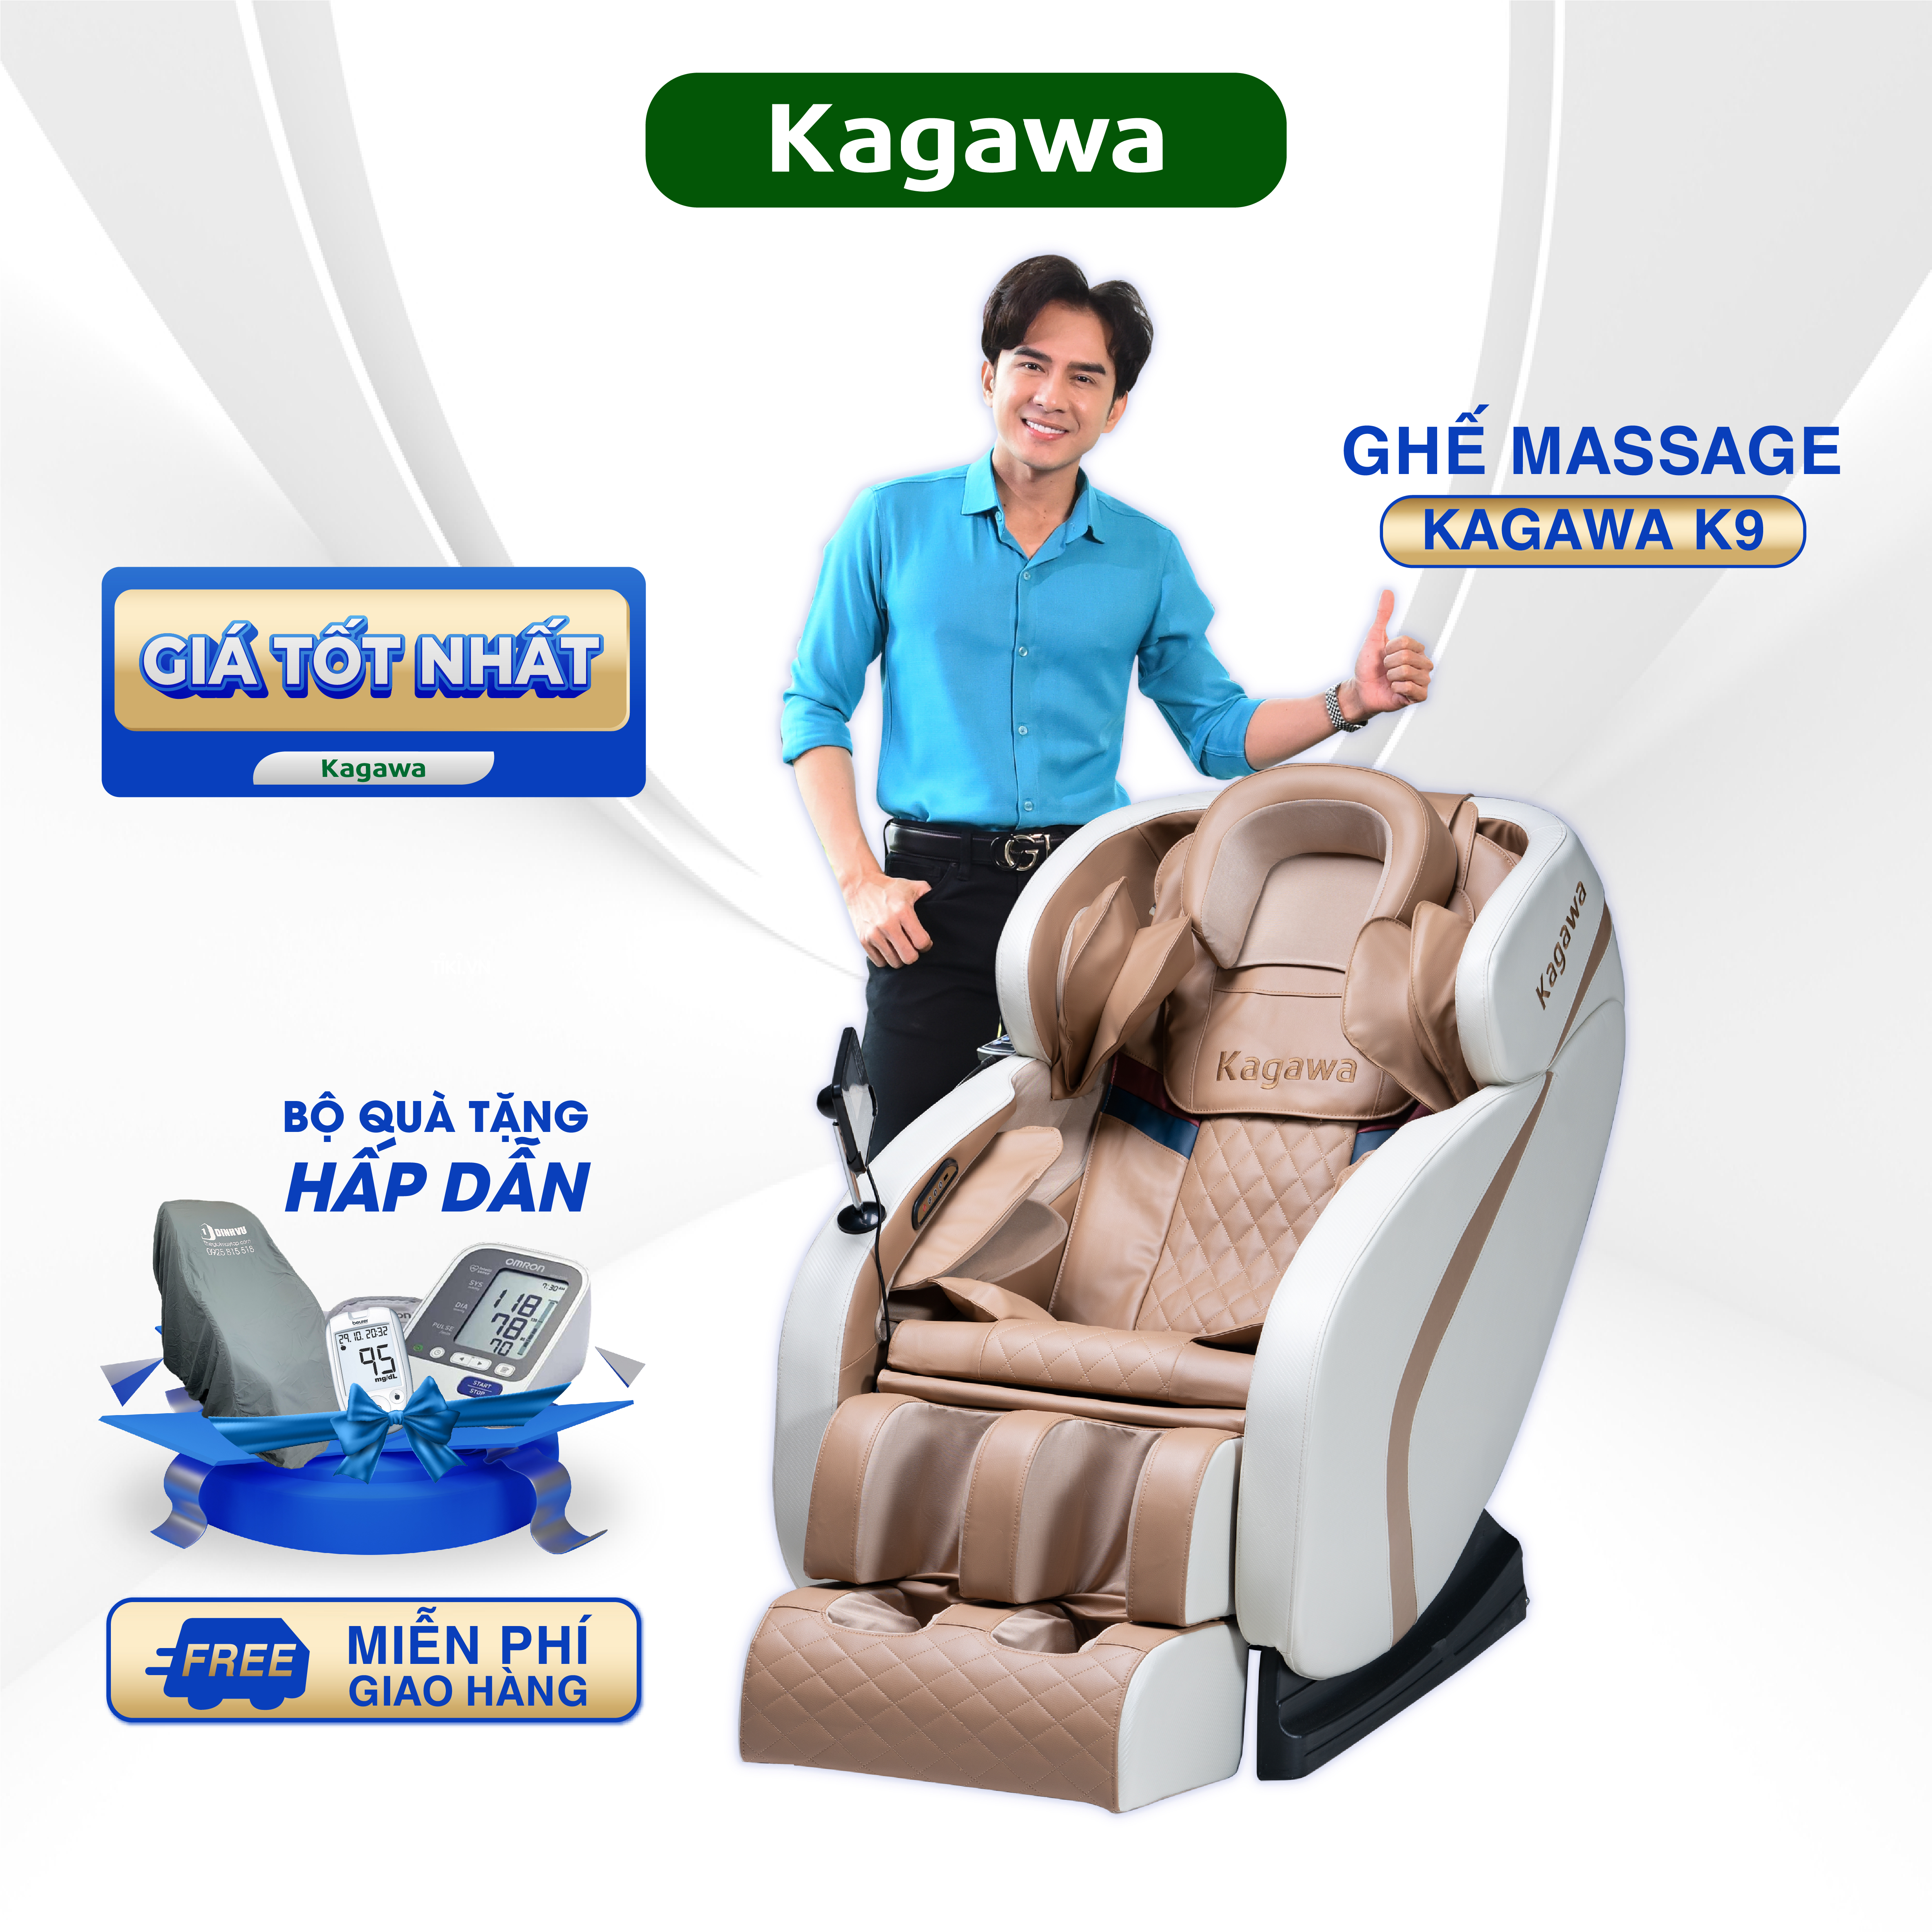 Ghế massage trị liệu toàn thân Kagawa K9 cao cấp đa chức năng công nghệ túi khí, nhiệt hồng ngoại